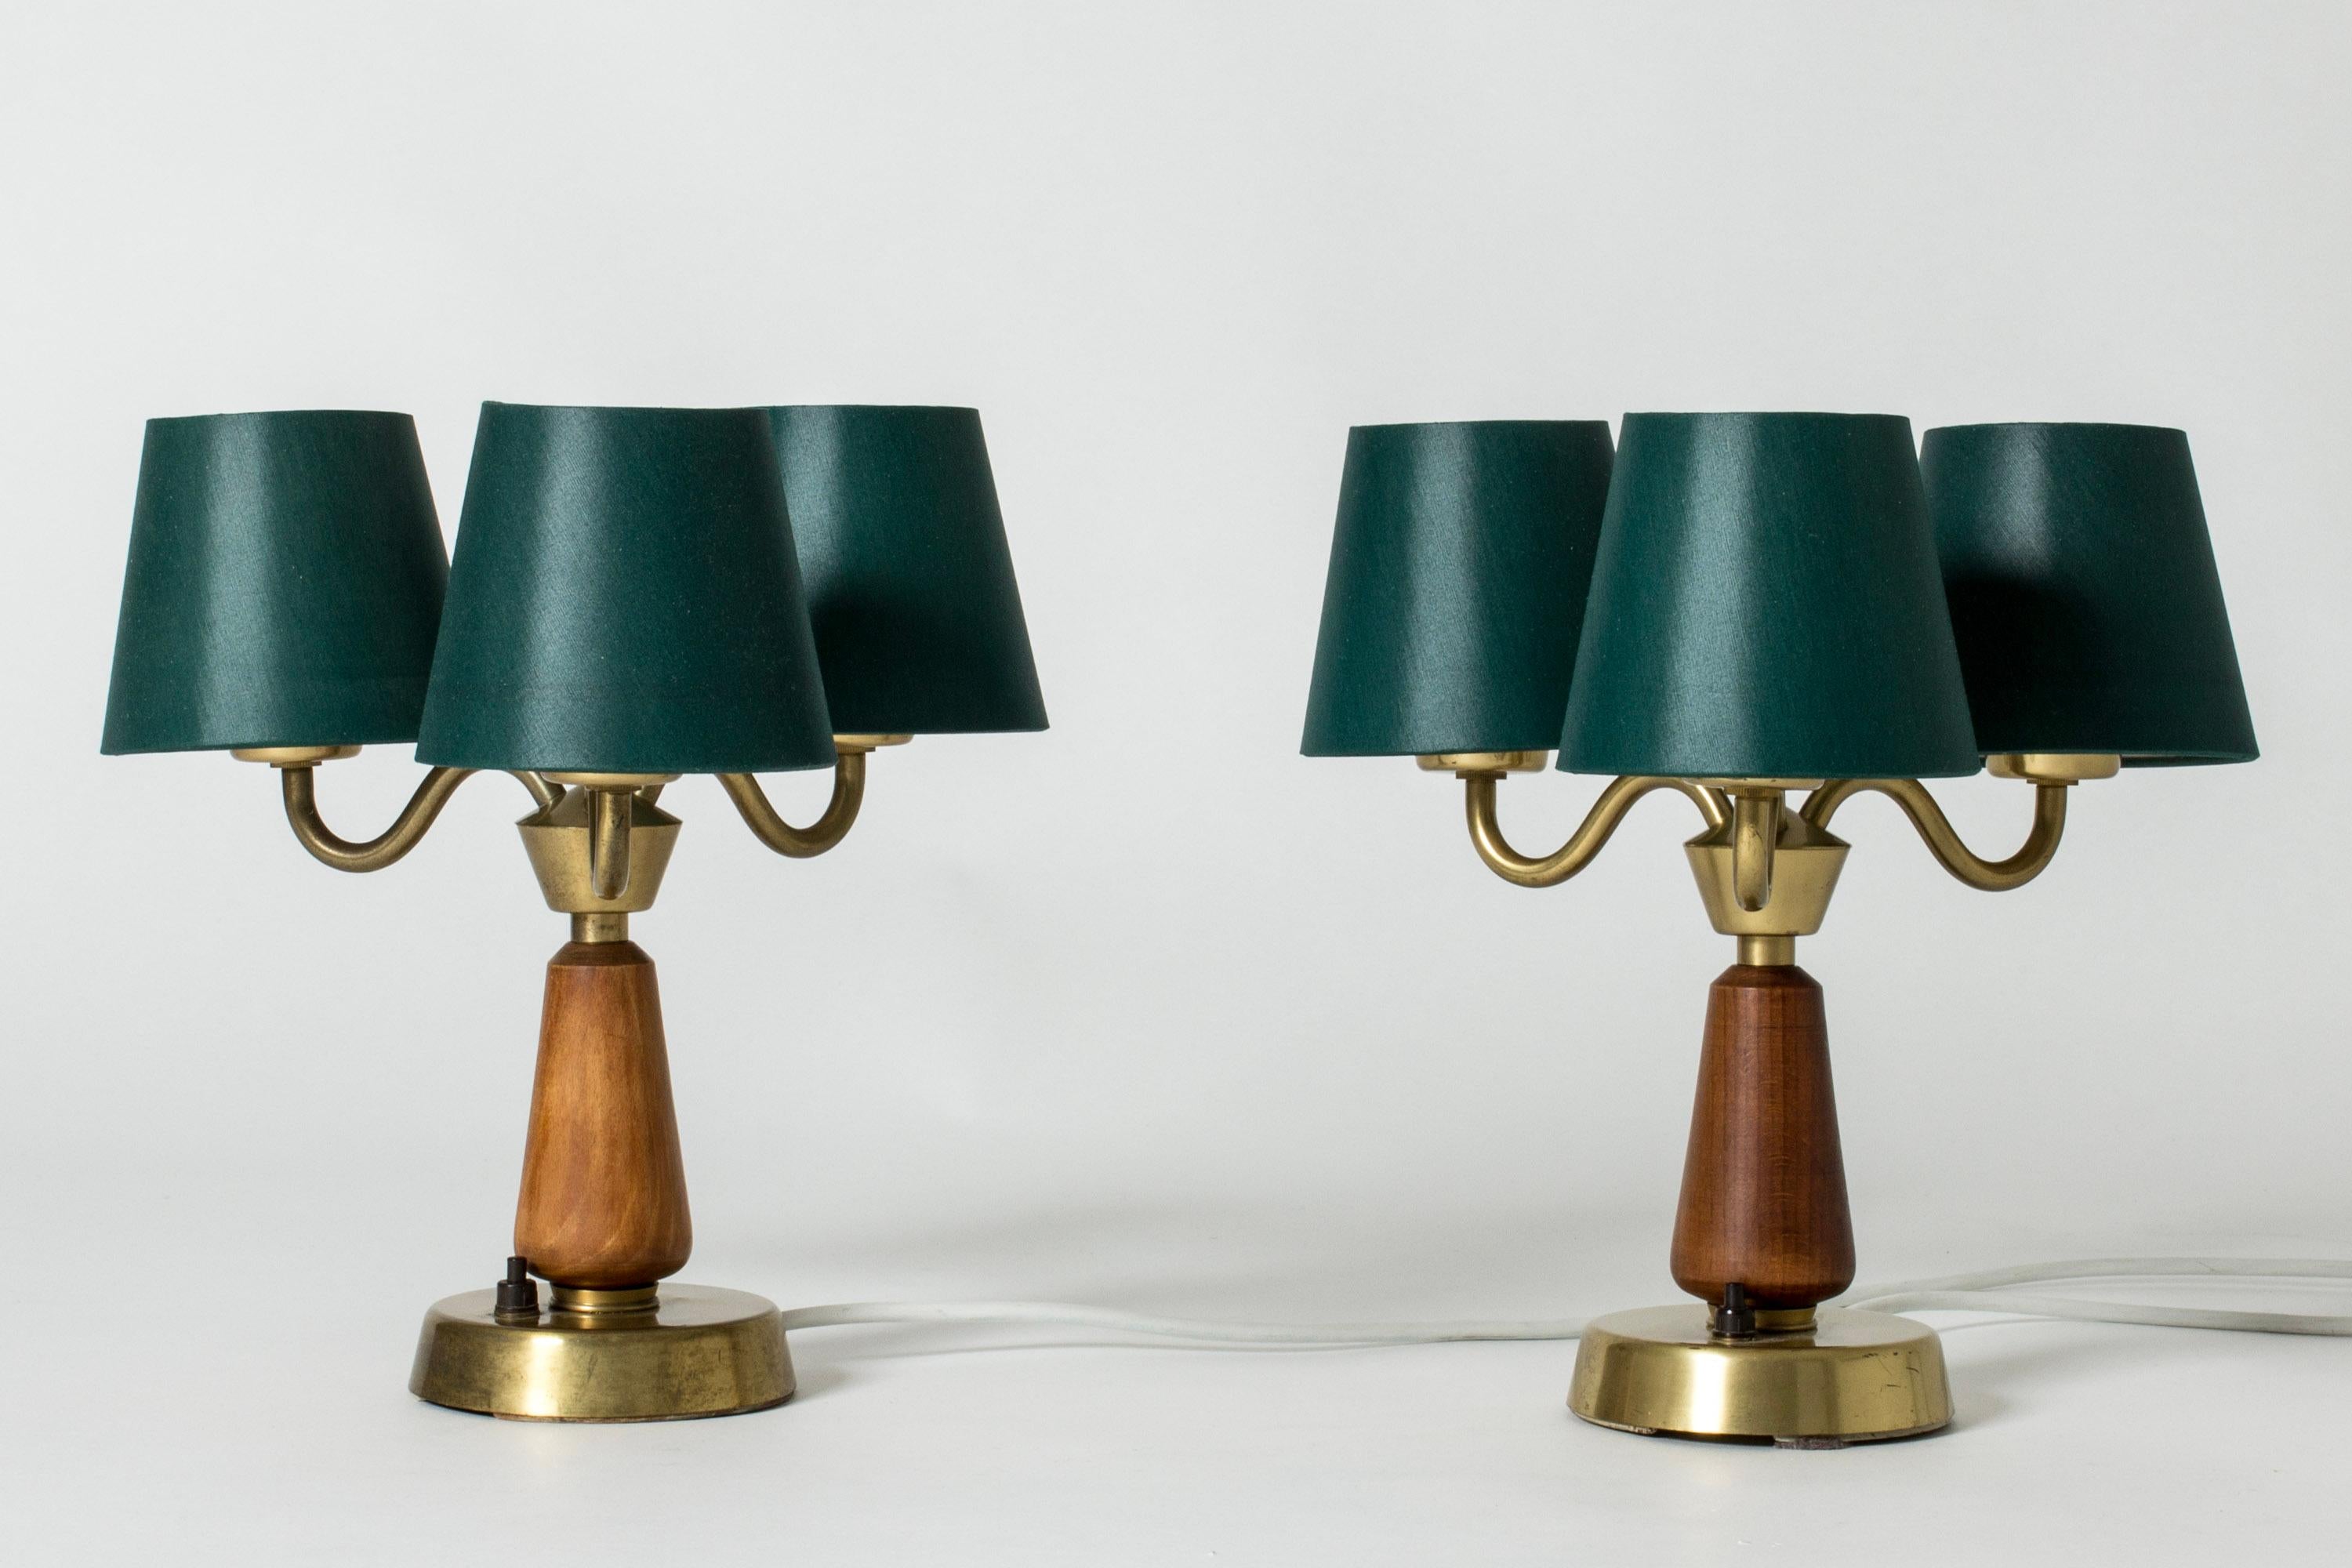 Scandinavian Modern Midcentury Scandinavian Table Lamps from ASEA, Sweden, 1950s For Sale